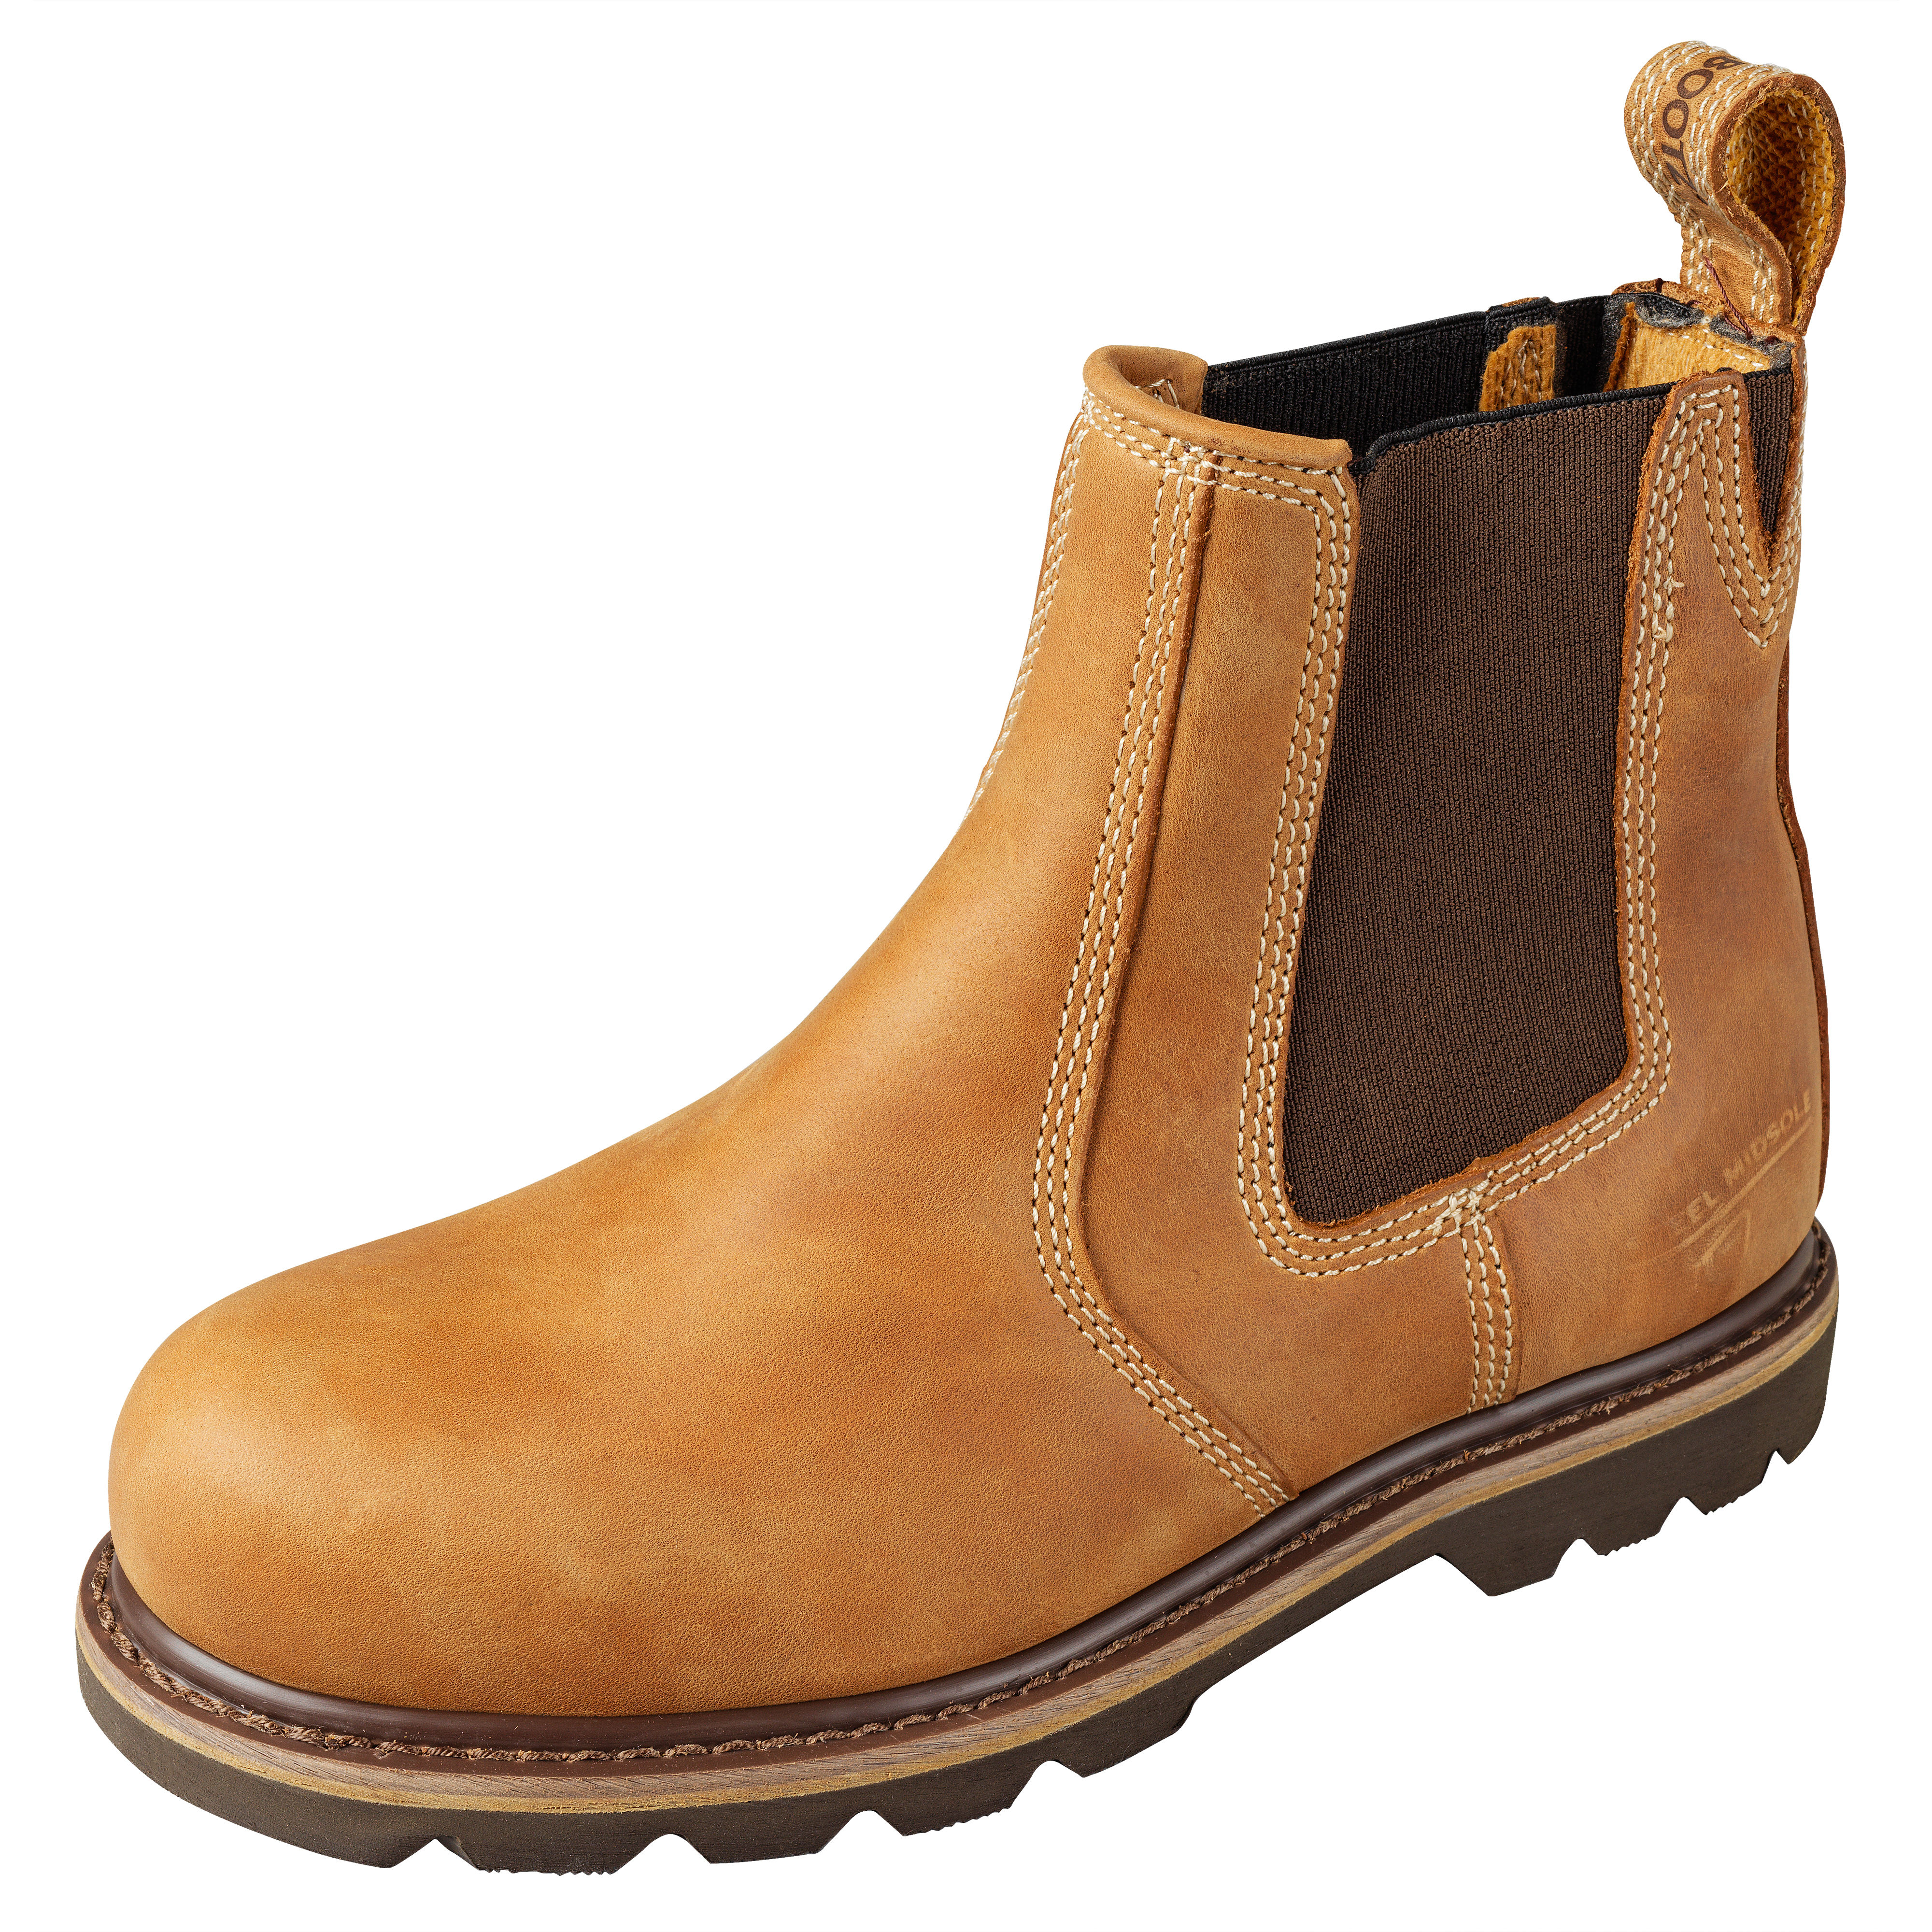 Buckler Buckflex Safety Dealer Boots Light Brown - B1151SM